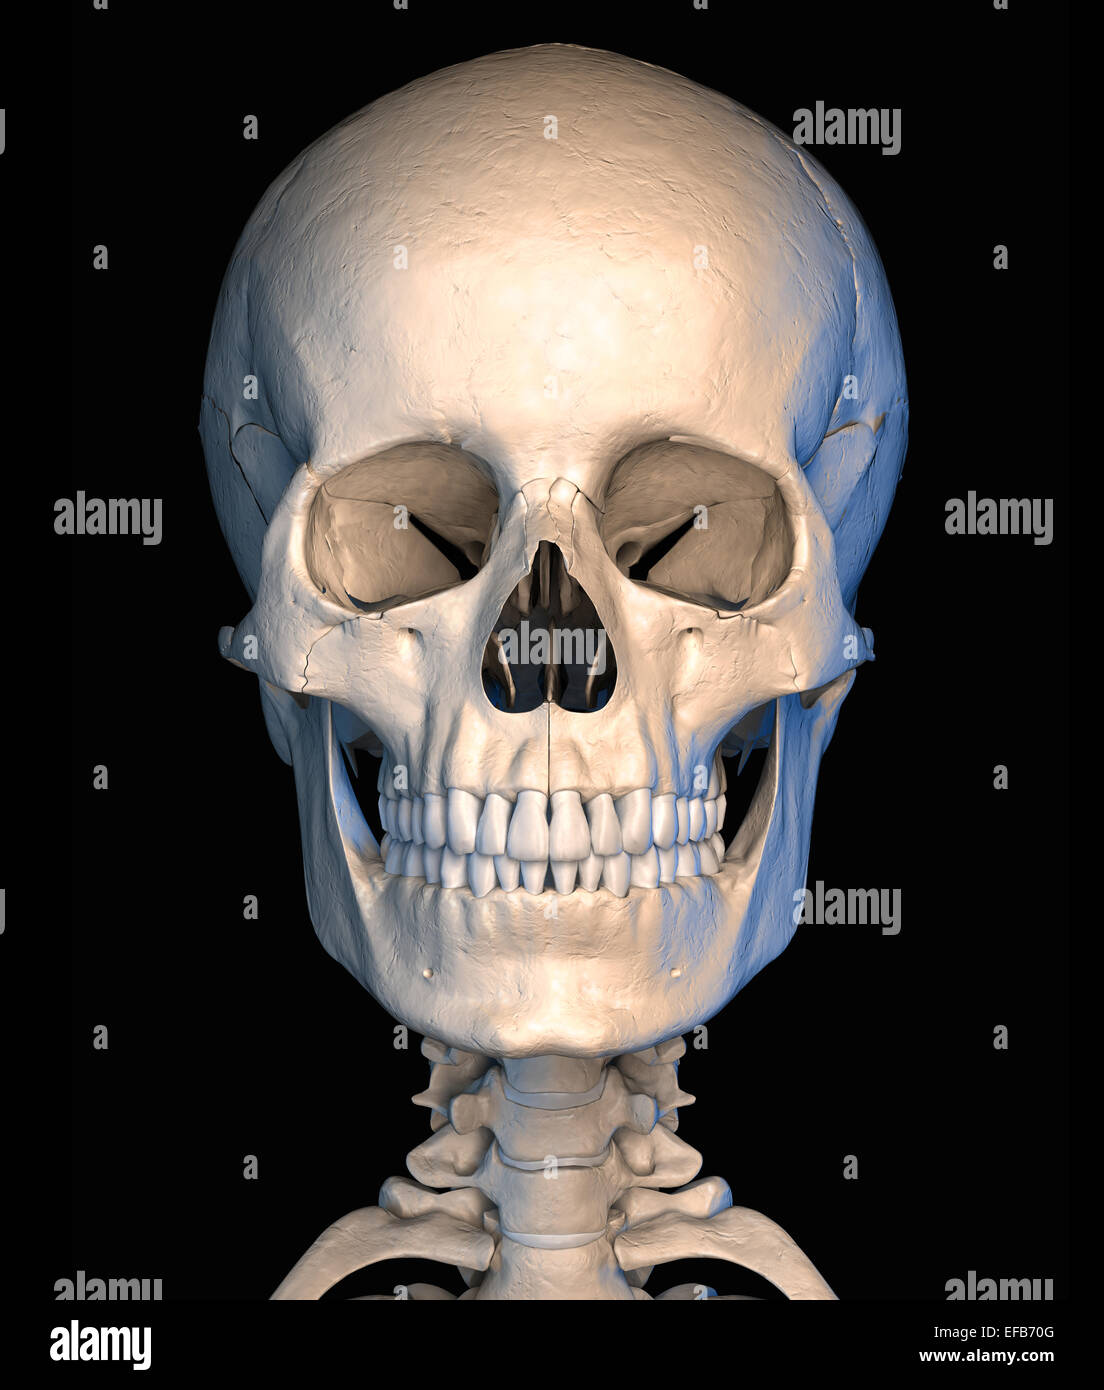 Sehr ausführlich und wissenschaftlich korrekt, menschlicher Schädel, Vorderansicht, auf schwarzem Hintergrund. Anatomie-Bild. Clipping-Pfad enthalten. Stockfoto